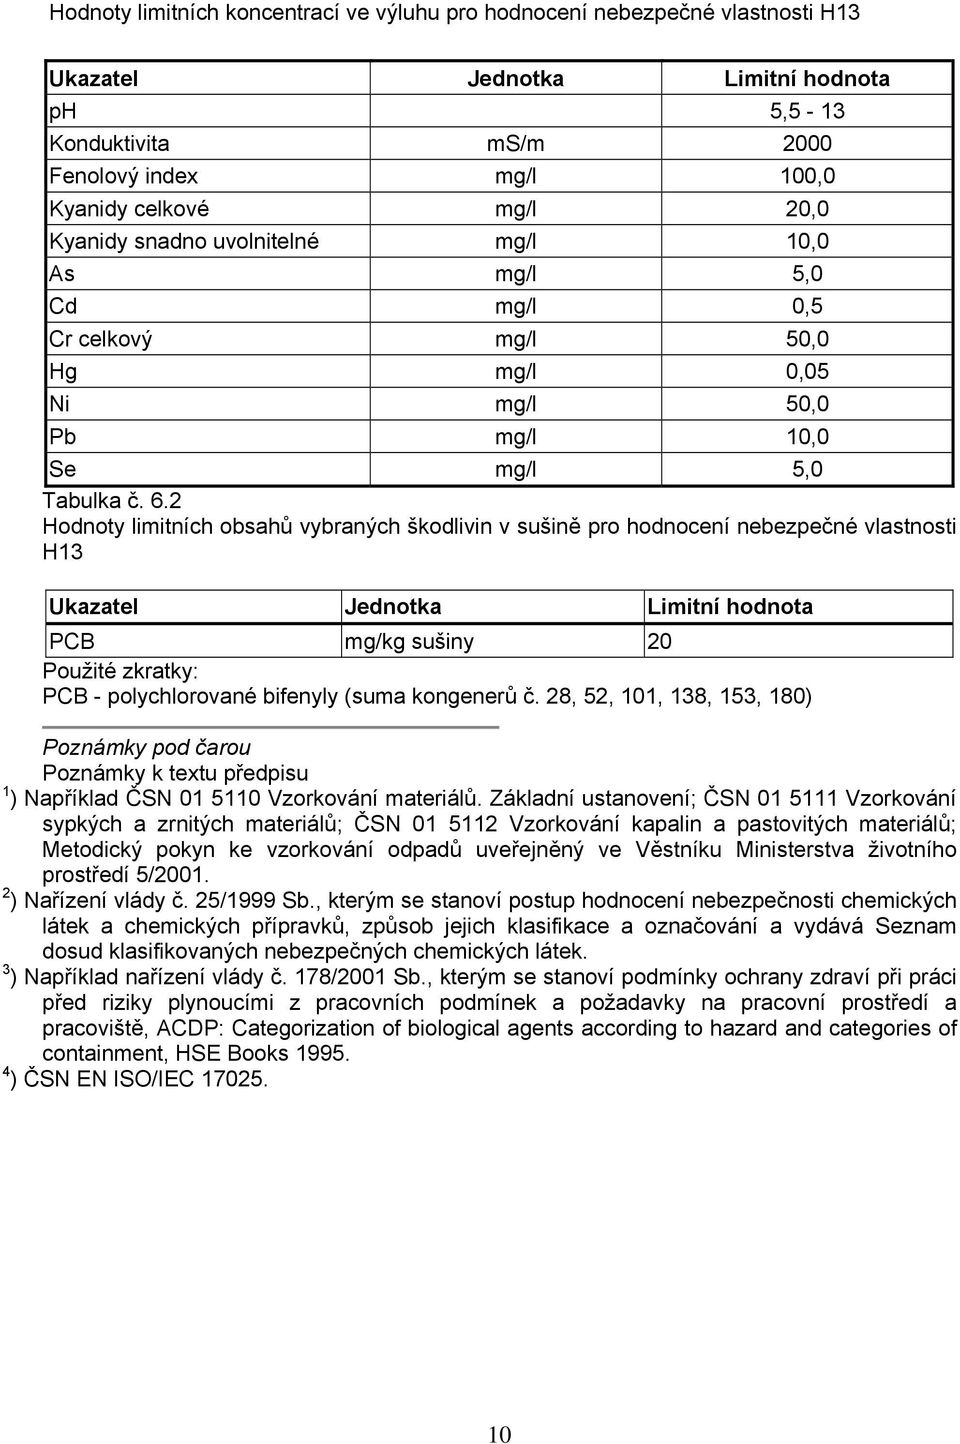 2 Hodnoty limitních obsahů vybraných škodlivin v sušině pro hodnocení nebezpečné vlastnosti H13 Ukazatel Jednotka Limitní hodnota PCB mg/kg sušiny 20 Použité zkratky: PCB - polychlorované bifenyly